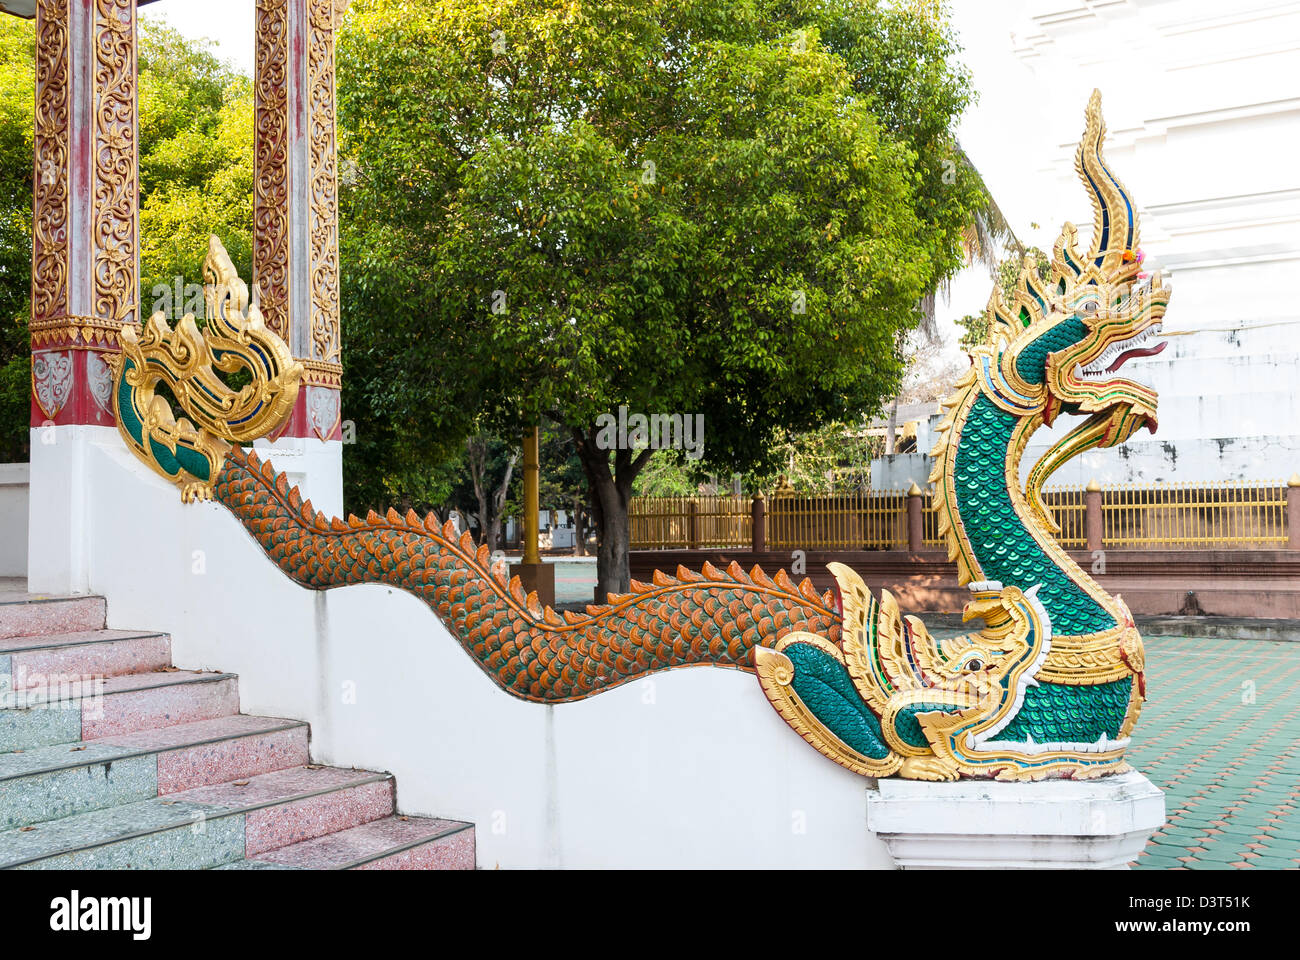 Naga/ Dragon/ King Cobra in temple Stock Photo